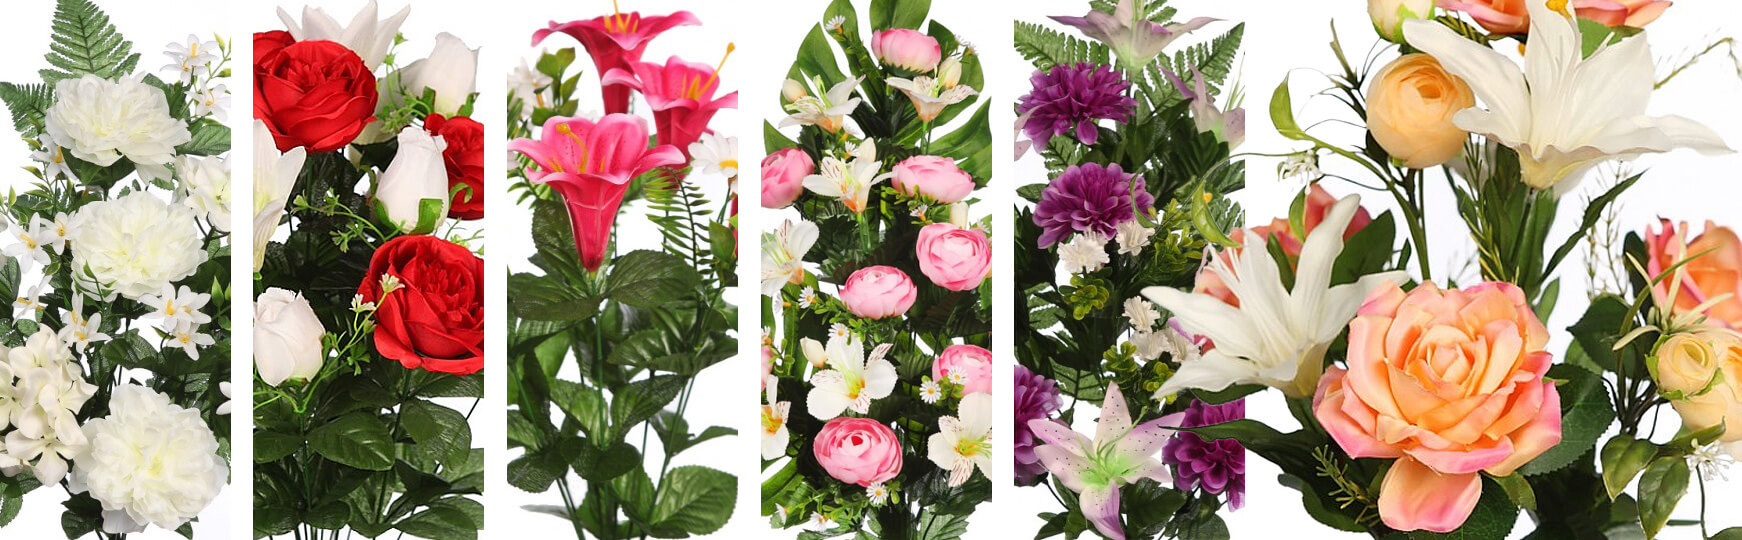 Flores artificiales para funerales al mejor precio